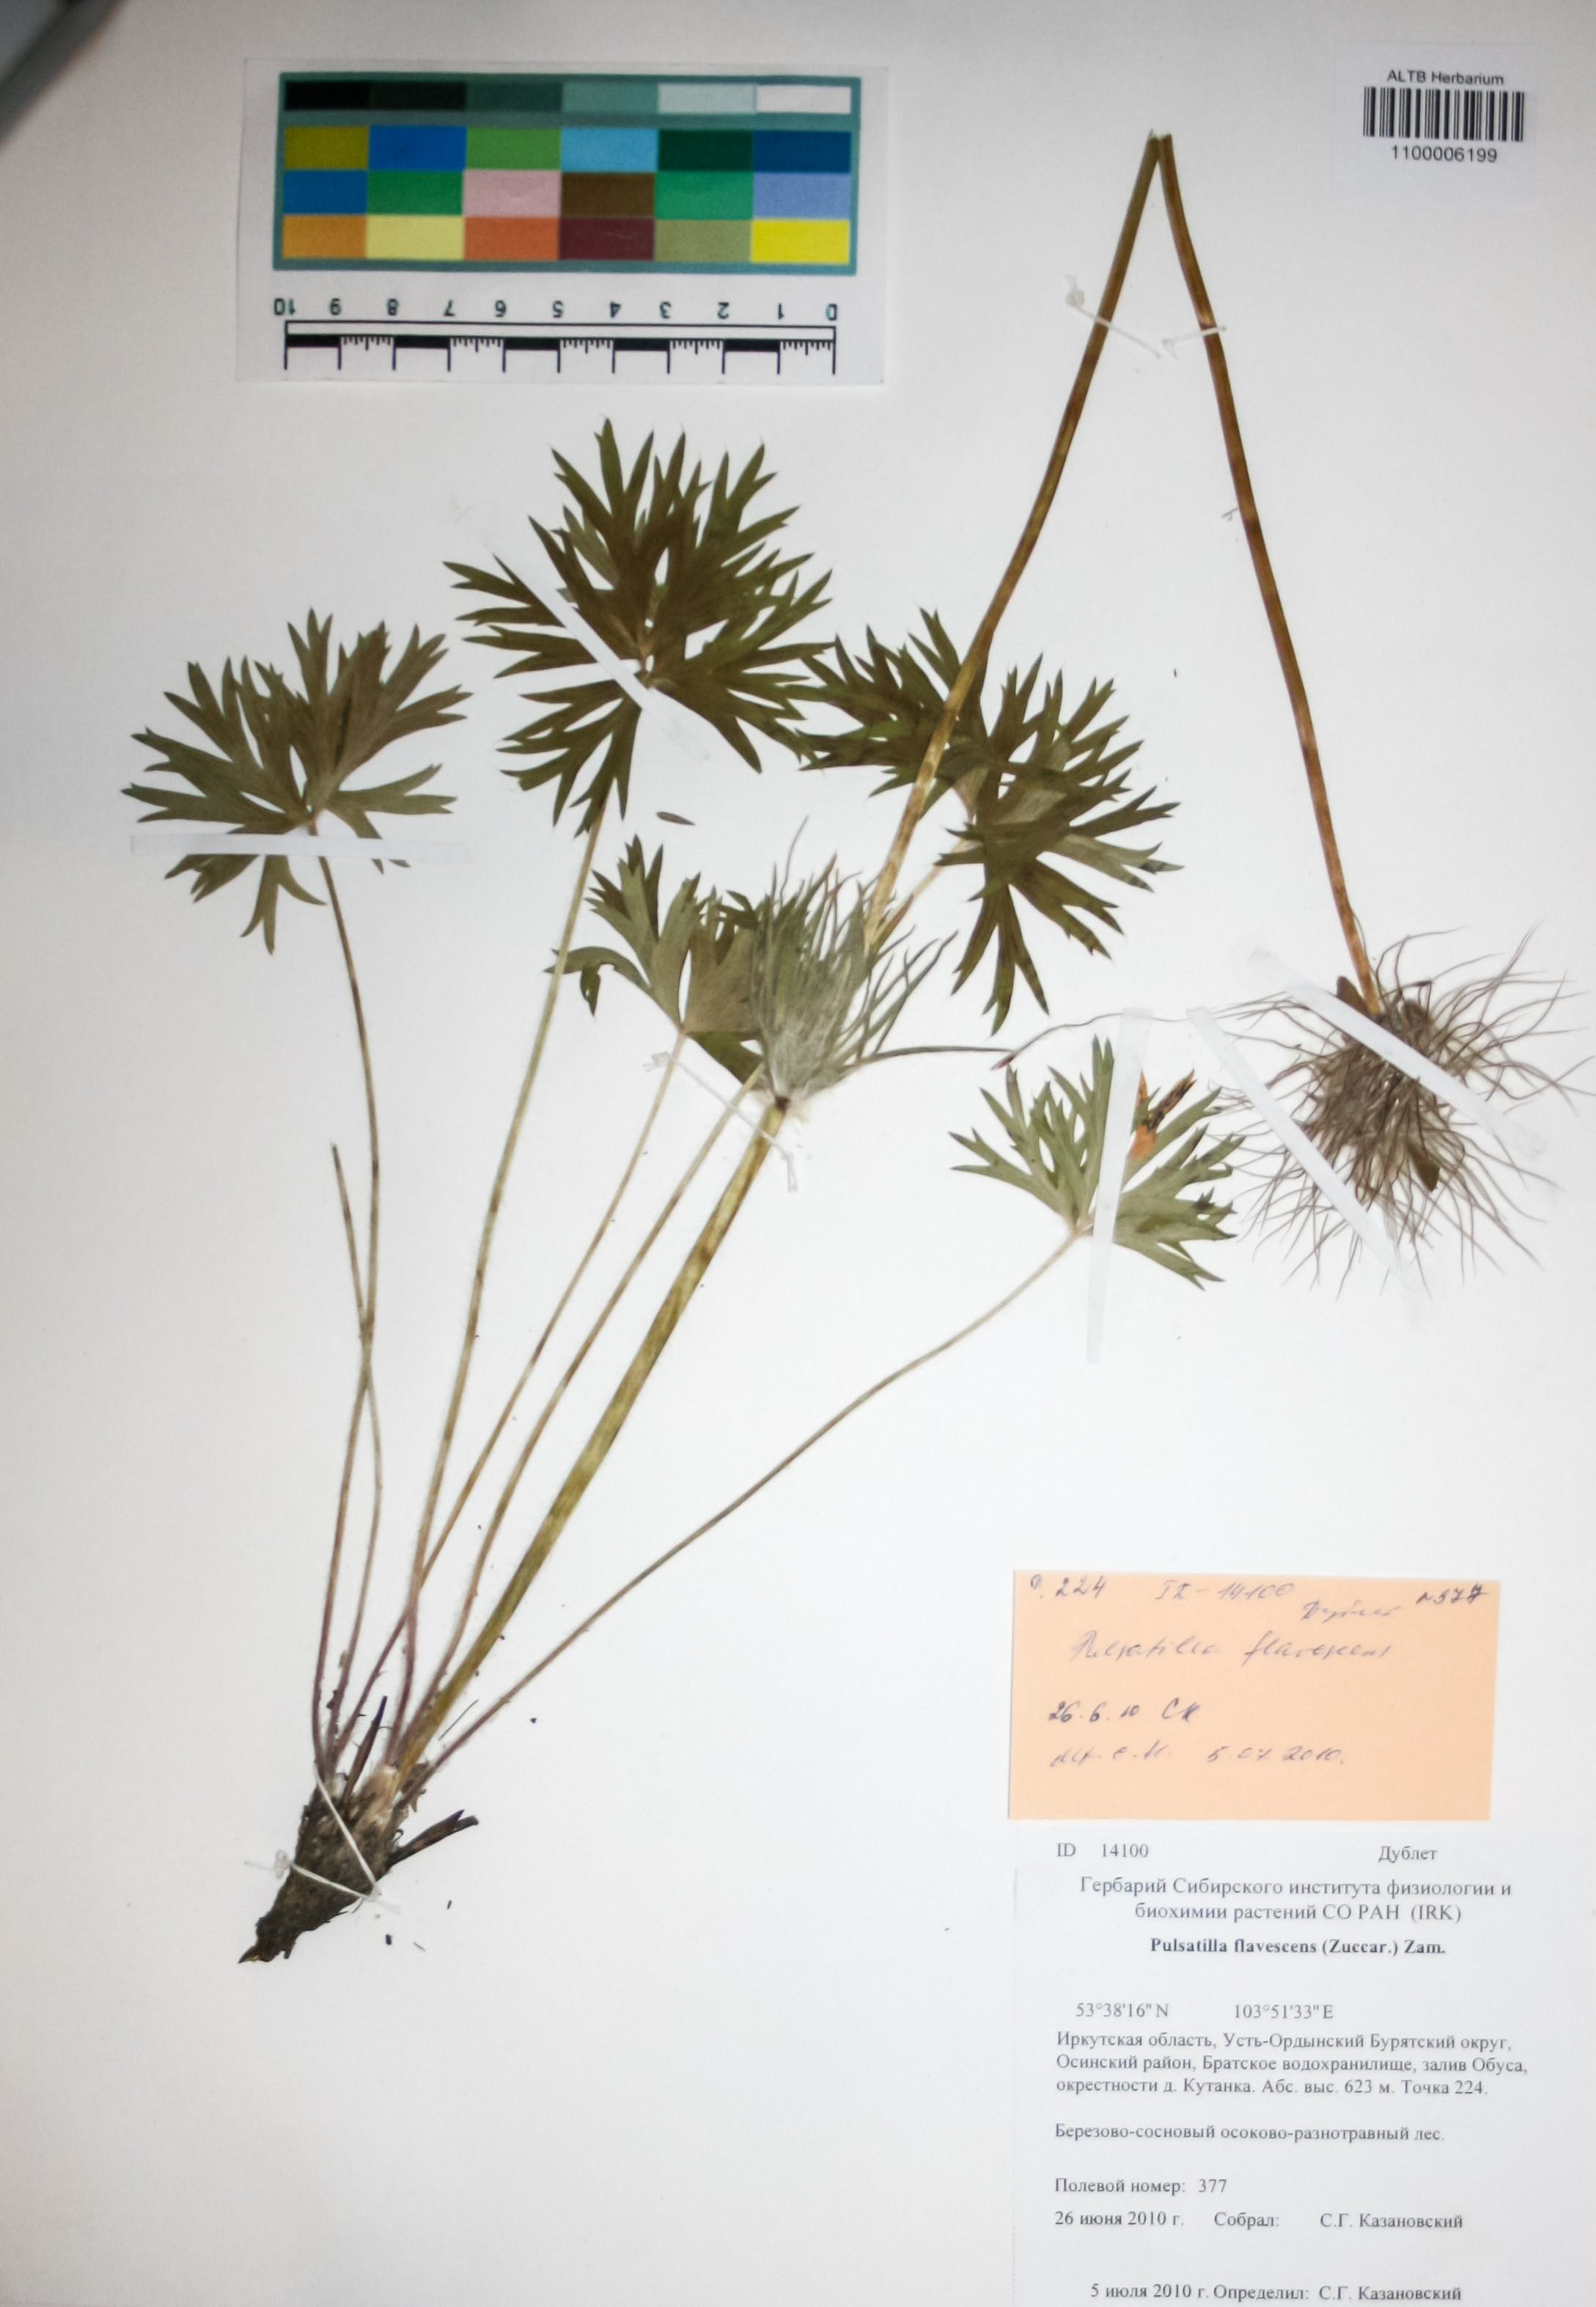 Ranunculaceae,Pulsatilla flavescens (Zucc.) Juz.